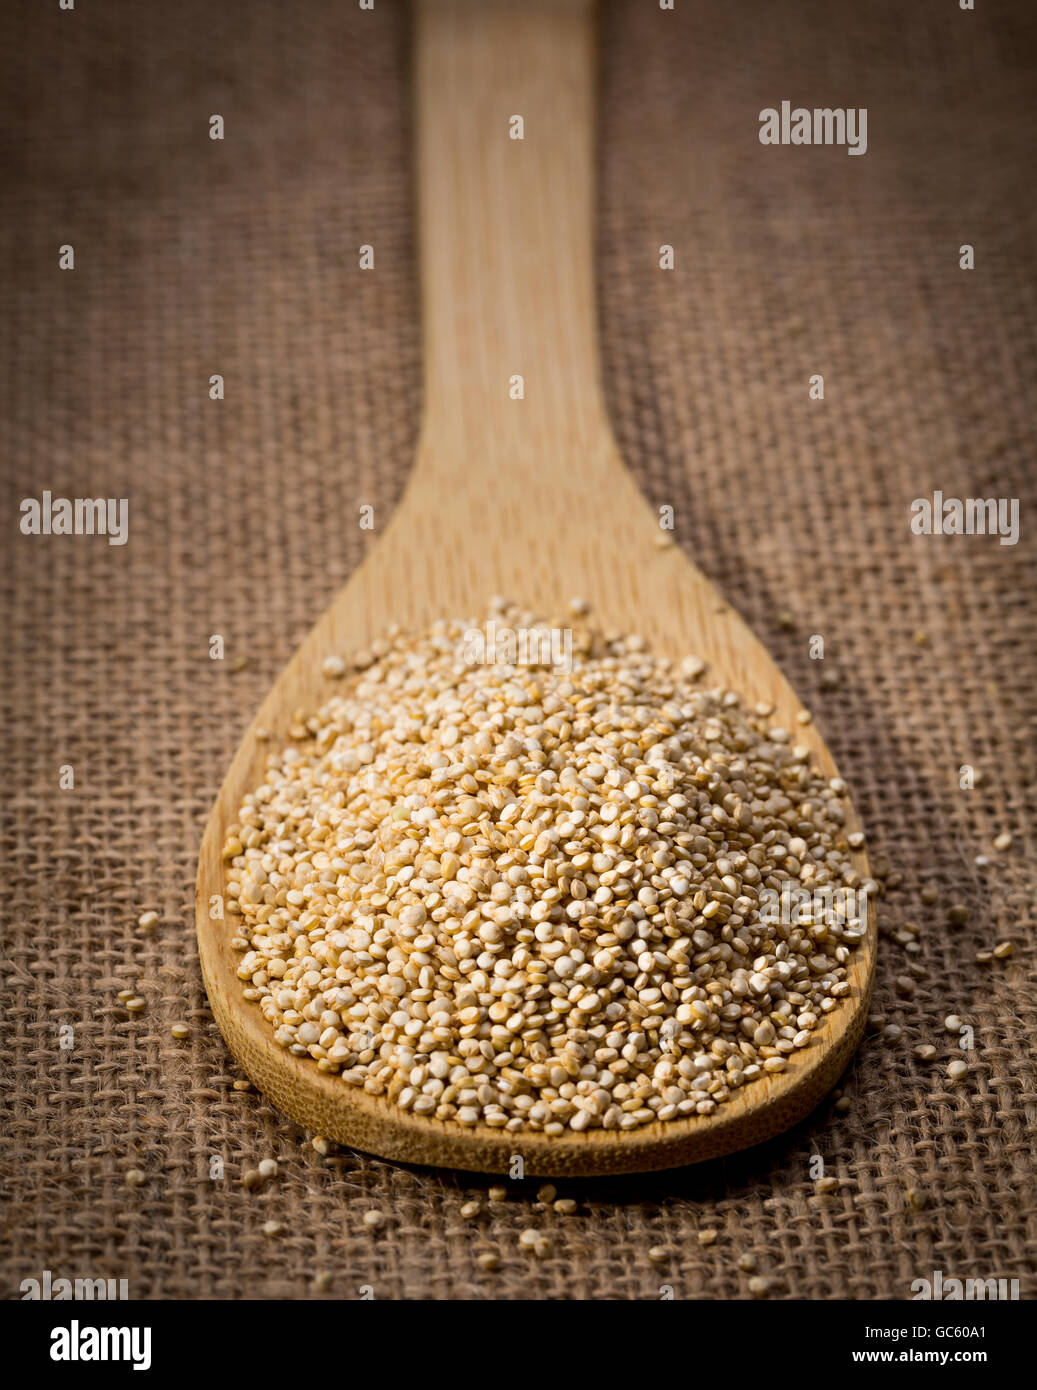 Les graines de quinoa sur cuillère en bois et de linge de maison, d'arrière-plan libre. Banque D'Images